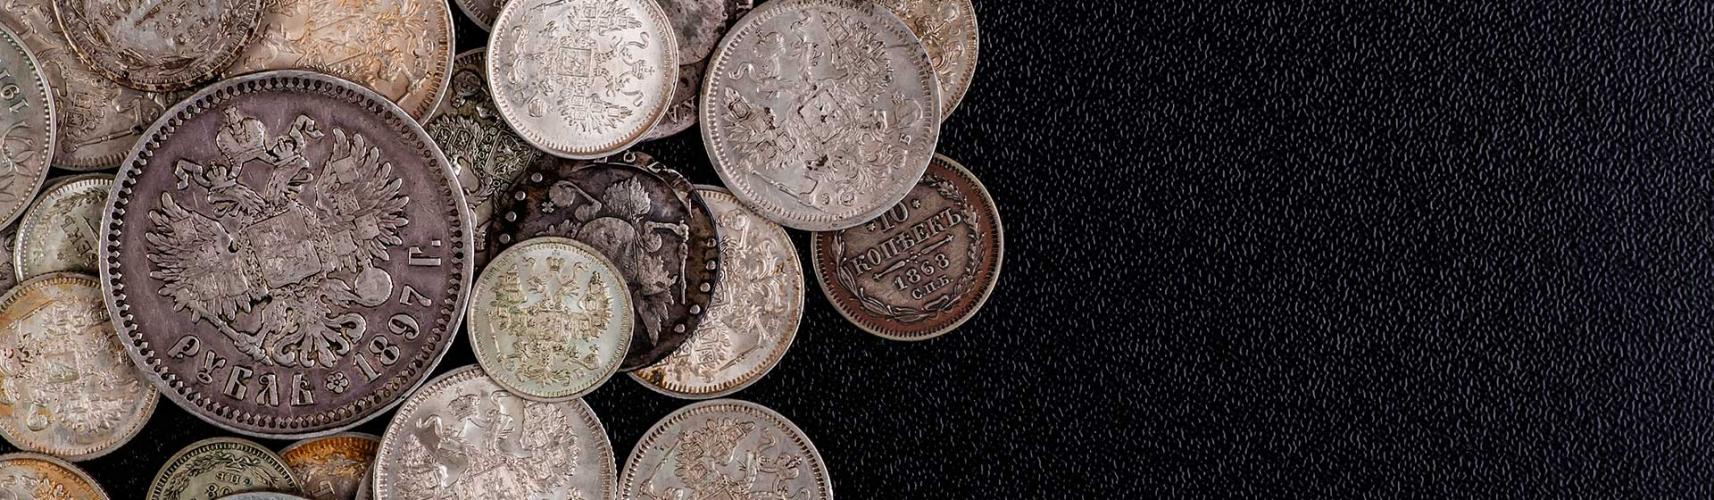 продать царские серебряные монеты